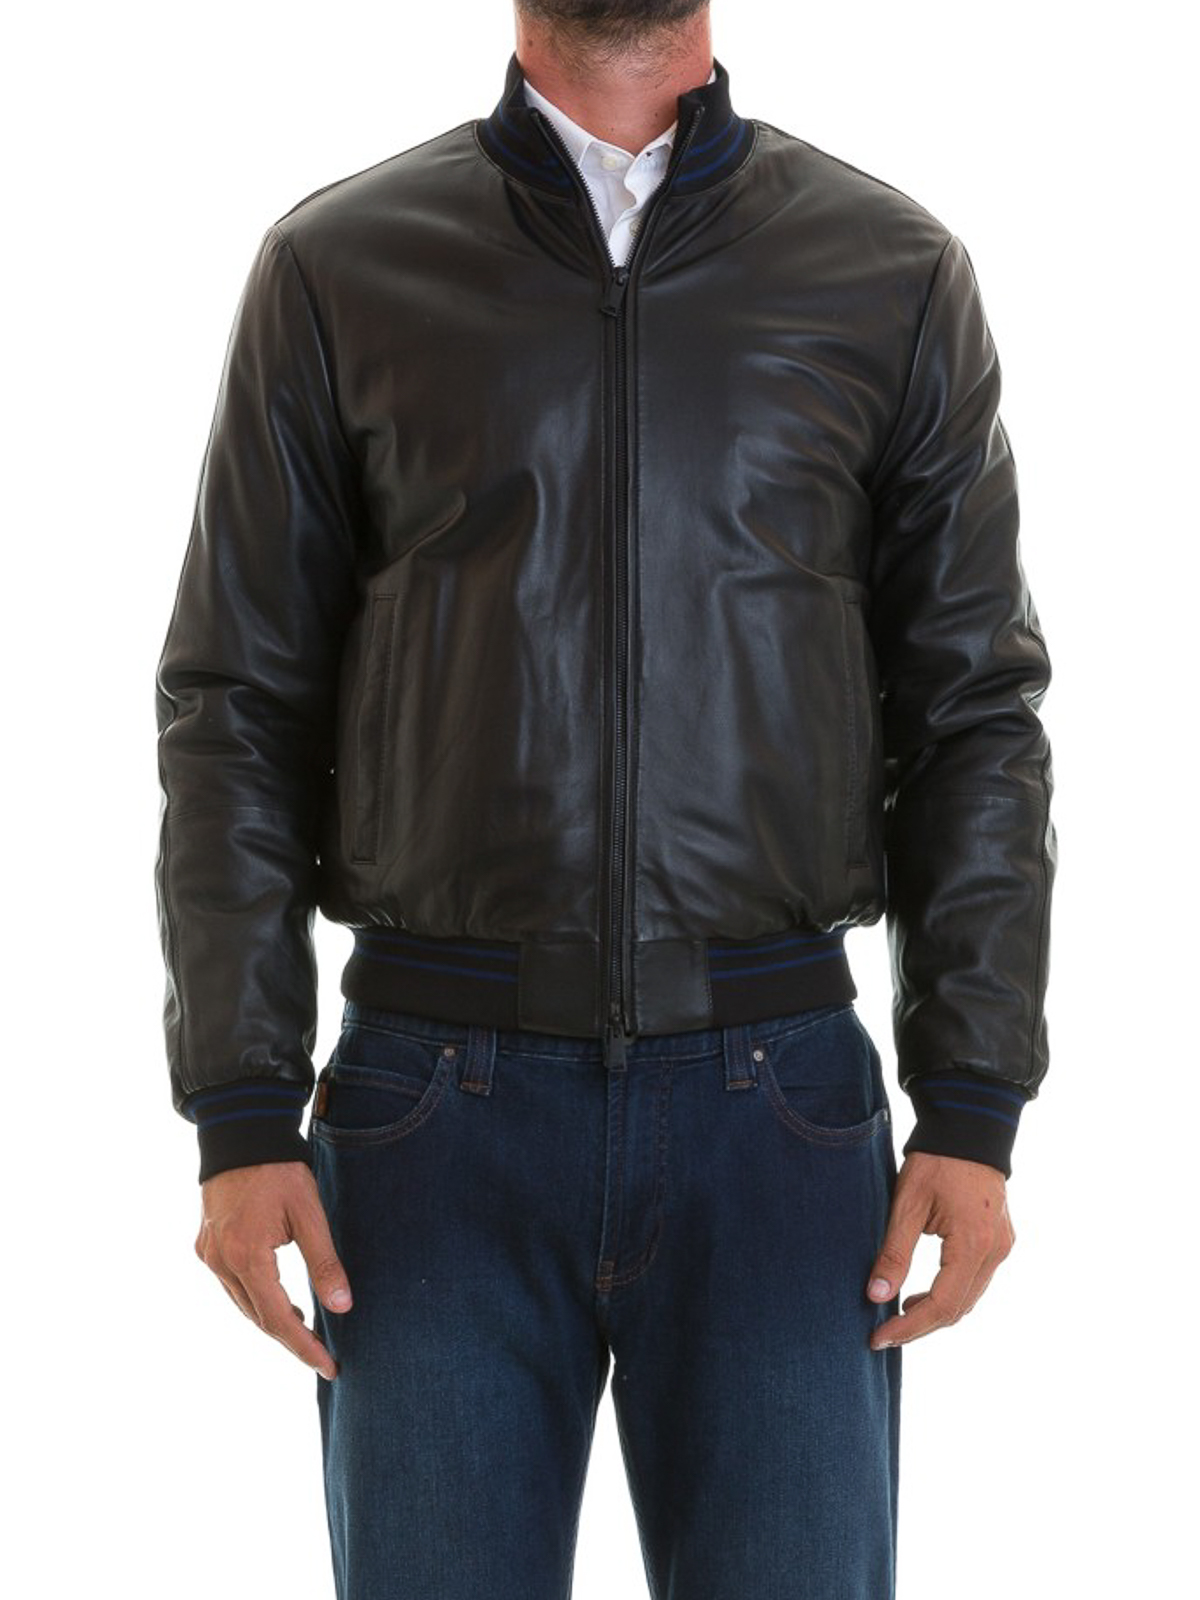 armani leather jacket